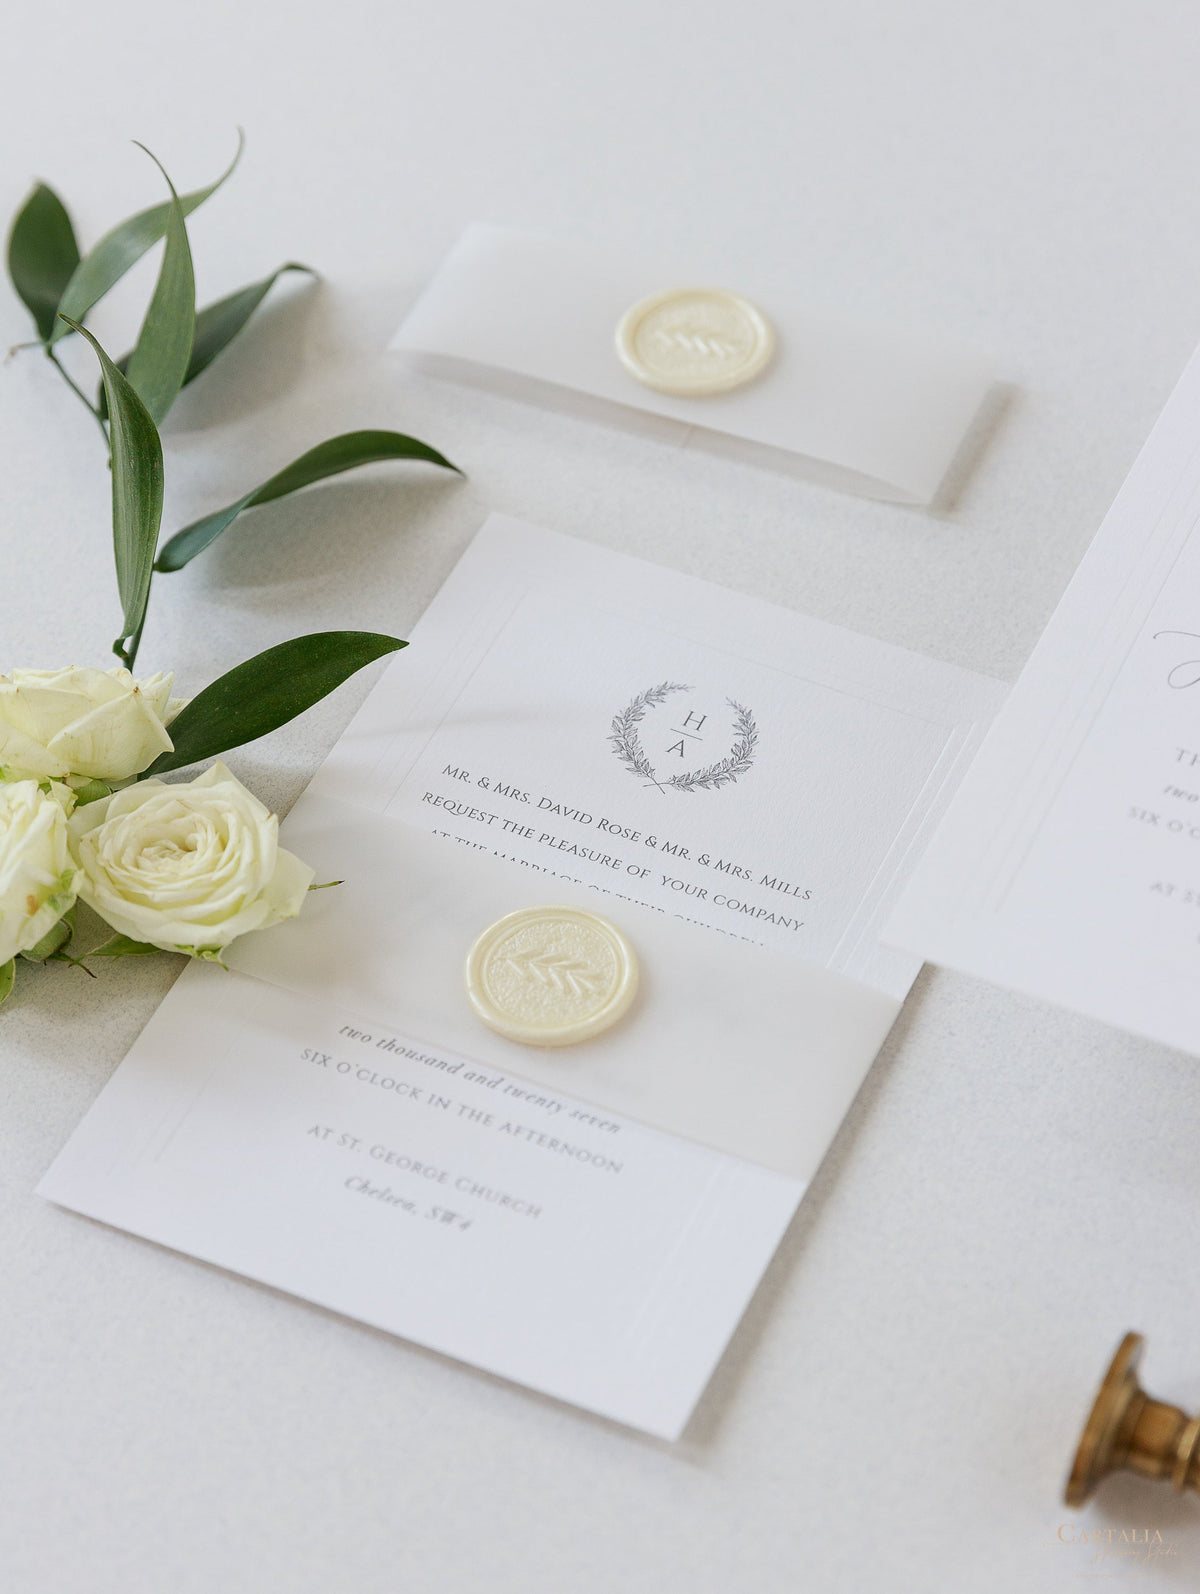 Invitación de noche de boda moderna con marco hundido triple en relieve atemporal y sello de cera